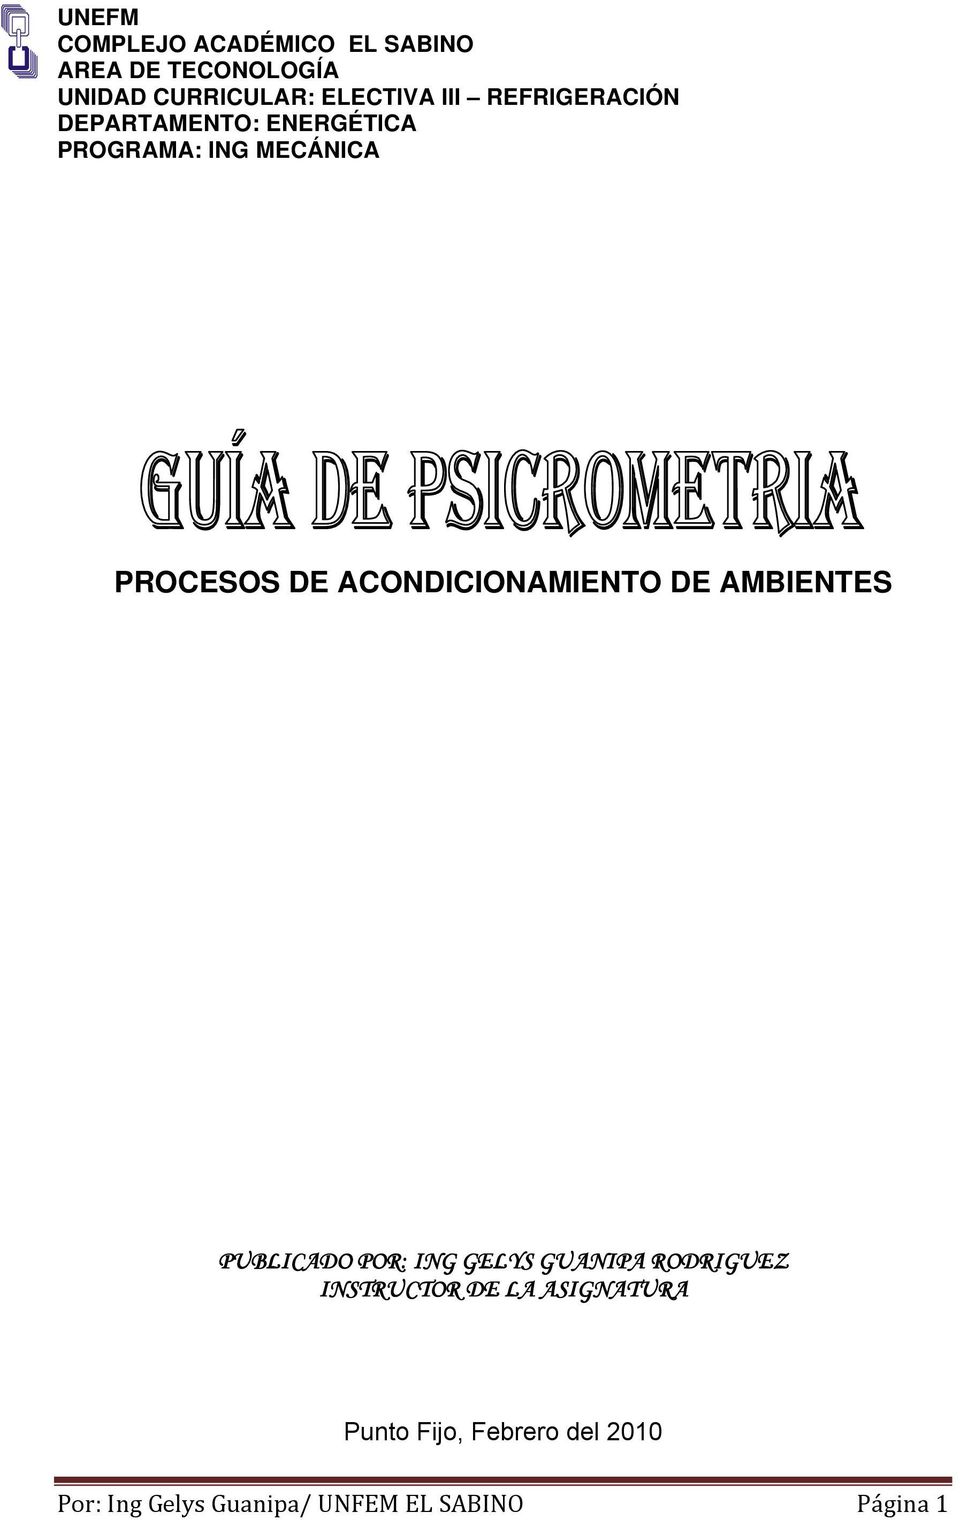 ACONDICIONAMIENTO DE AMBIENTES PUBLICADO POR: ING GELYS GUANIPA RODRIGUEZ INSTRUCTOR